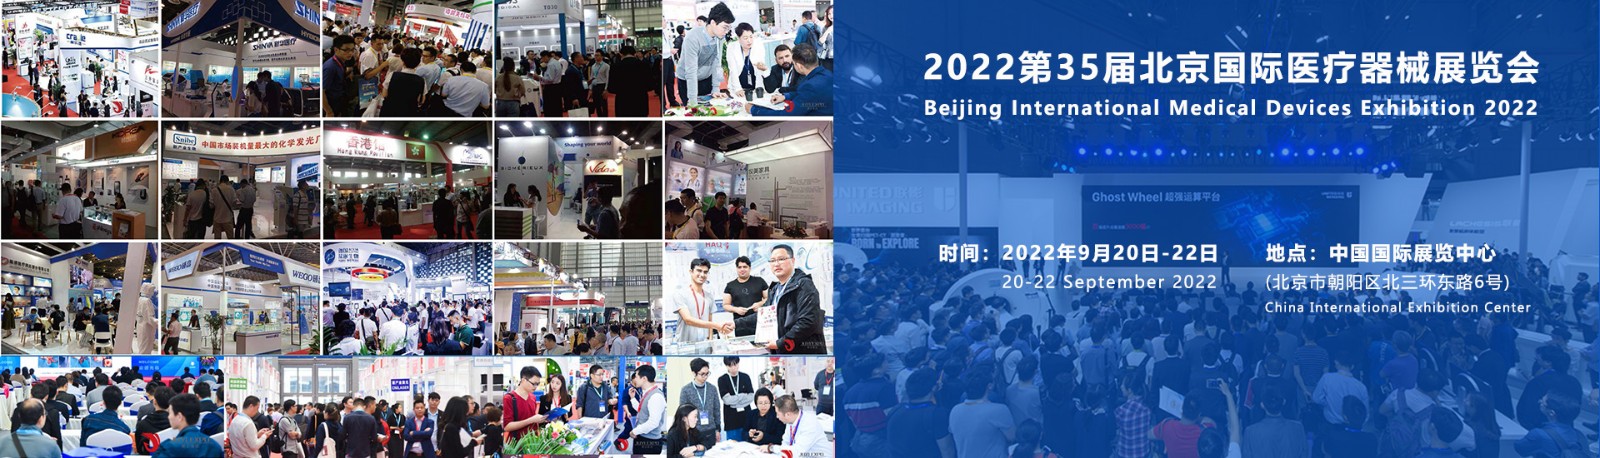 北京国际医疗器械展览会:展位申请